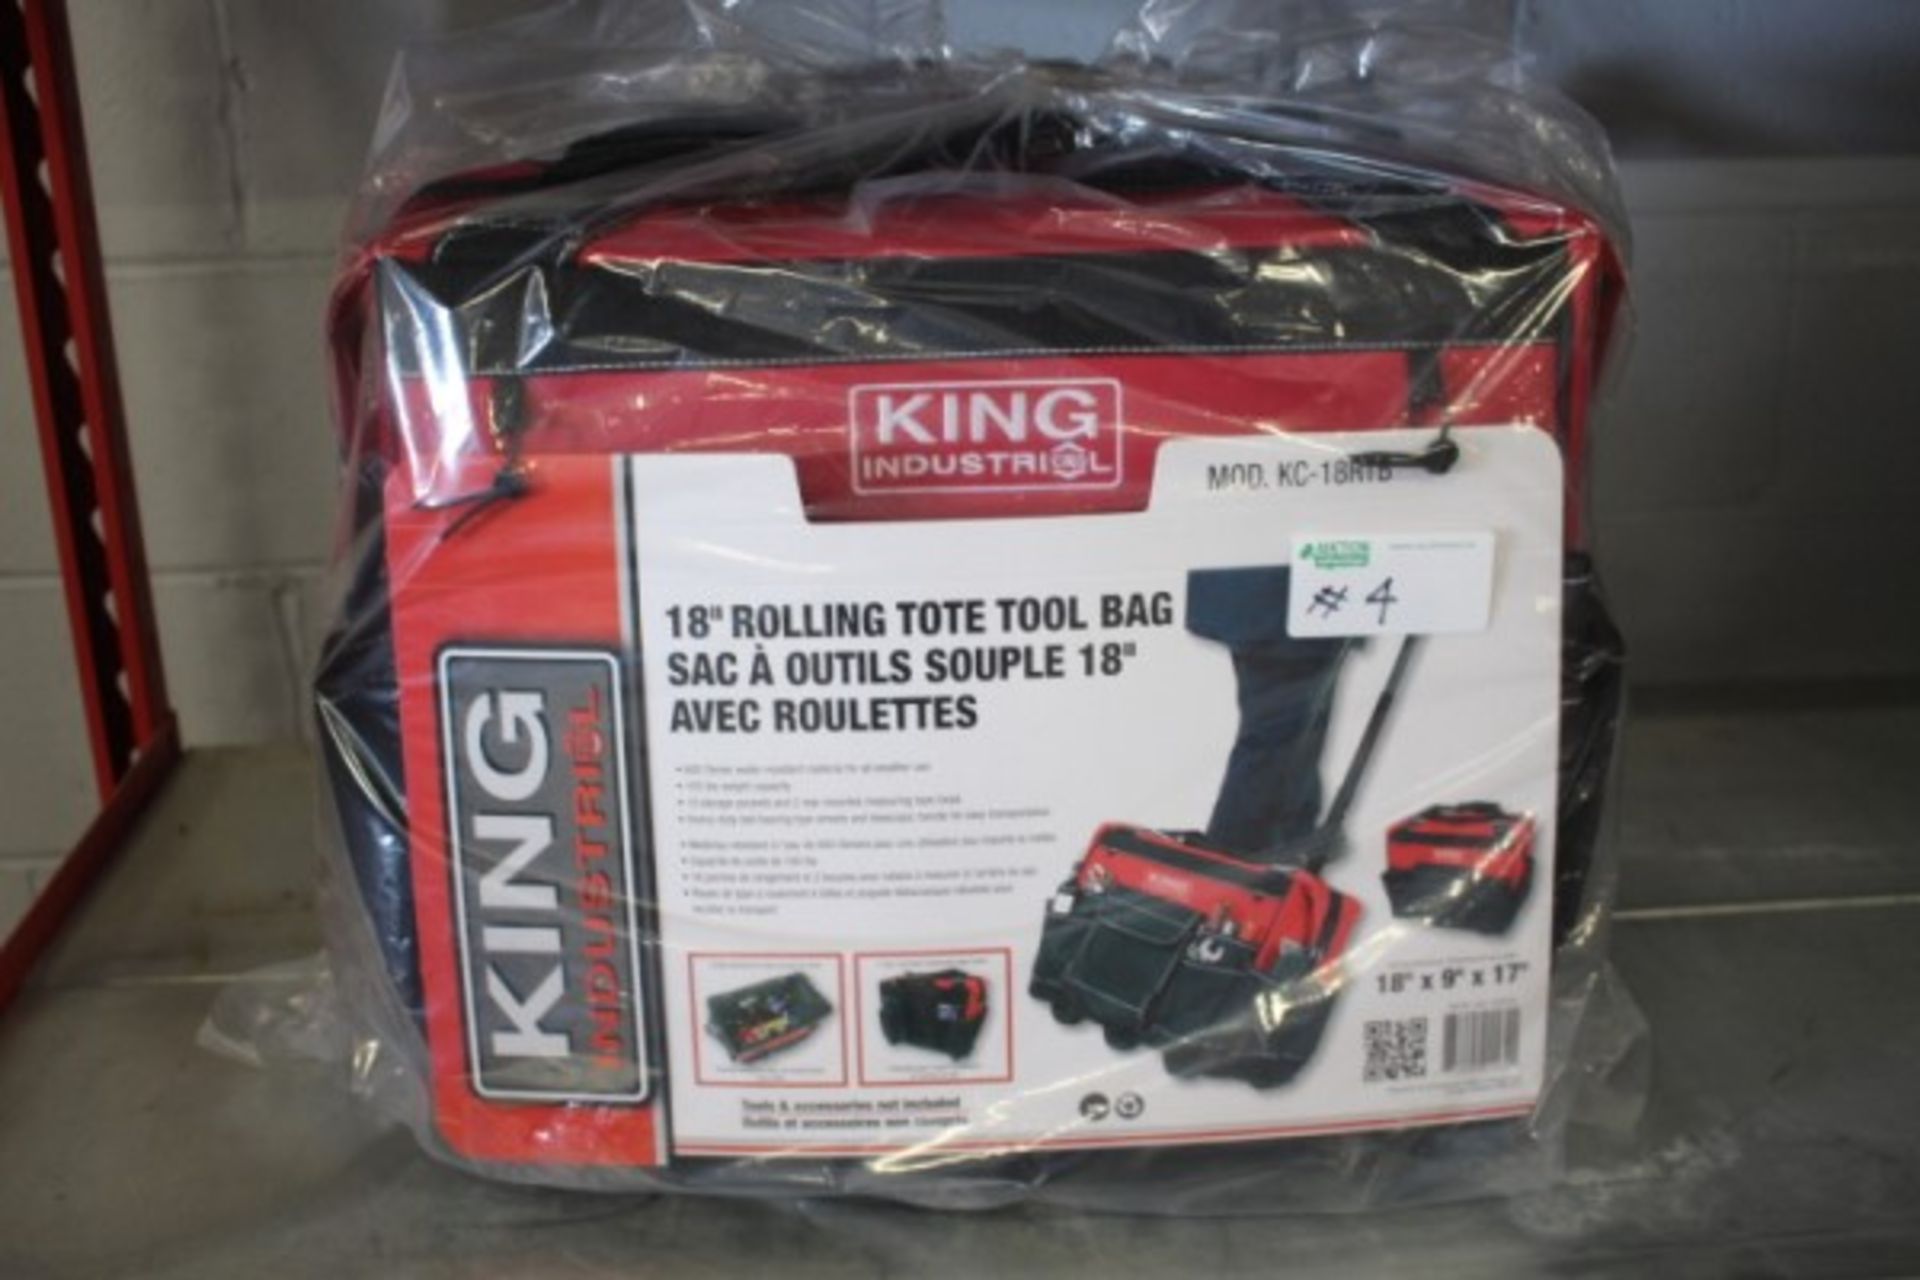 King Industrial 18" Rolling Tote Tool Bag